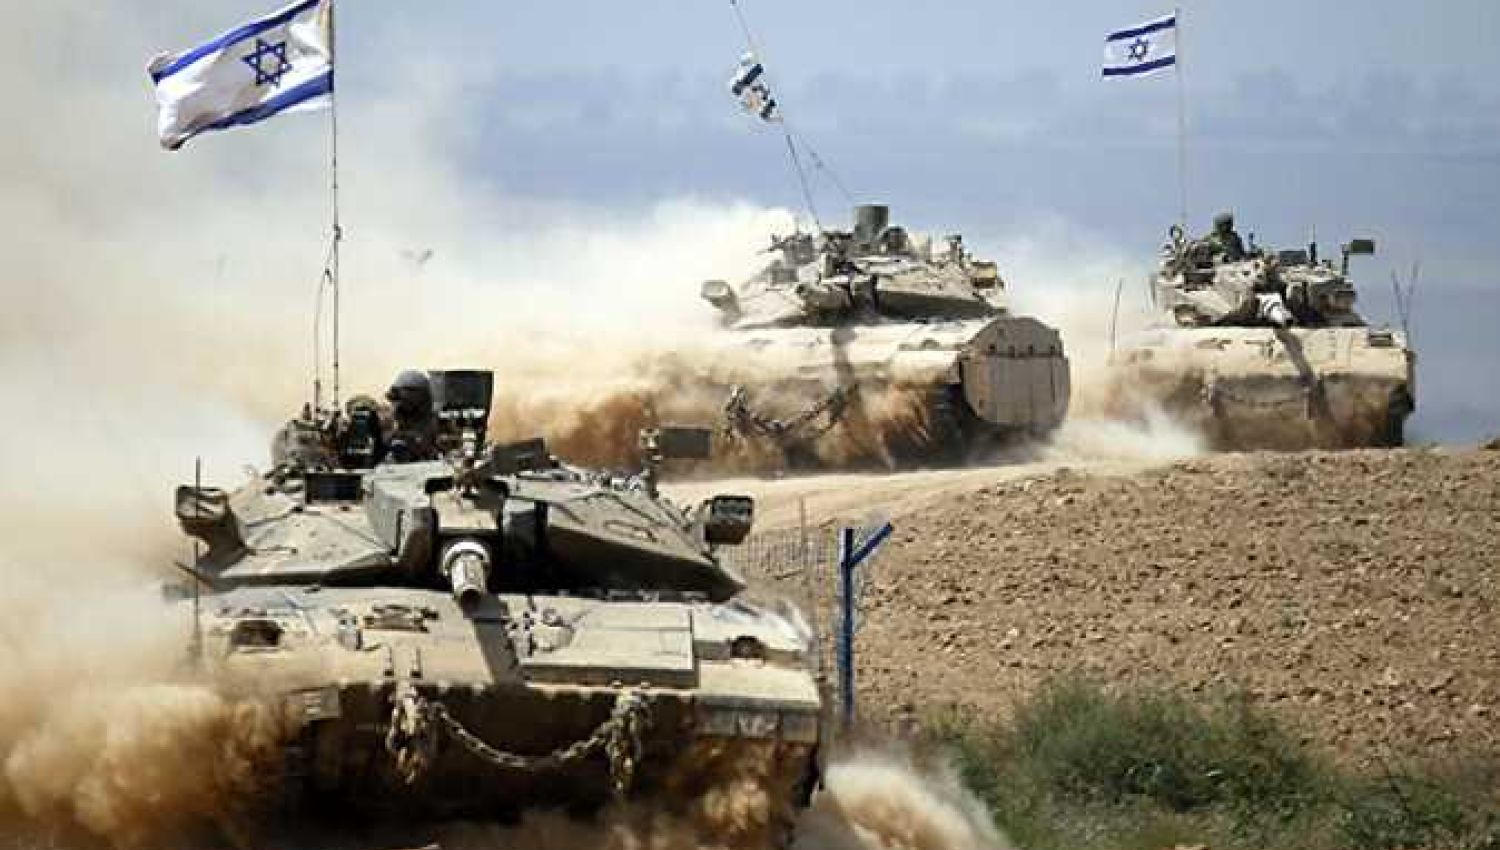 كيف تسمي "إسرائيل" عملياتها العسكرية؟